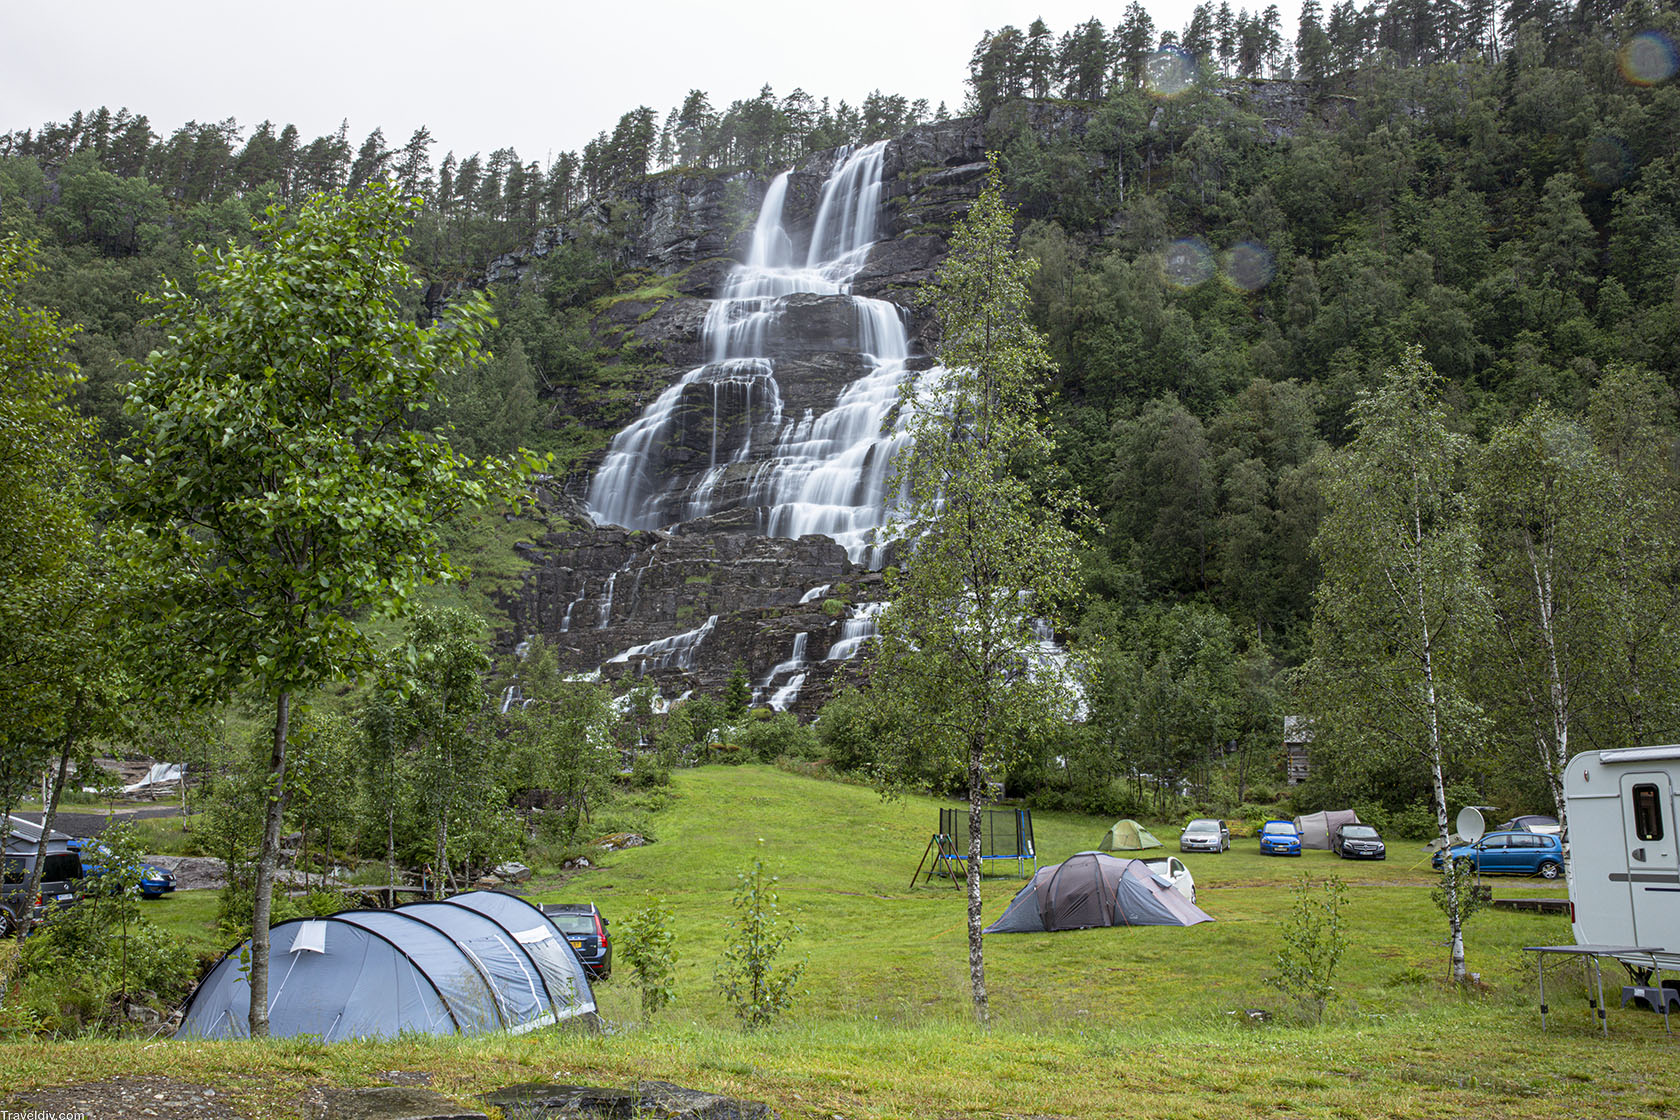 جدول سياحي لزيارة النرويج لمدة ١٥ يوم